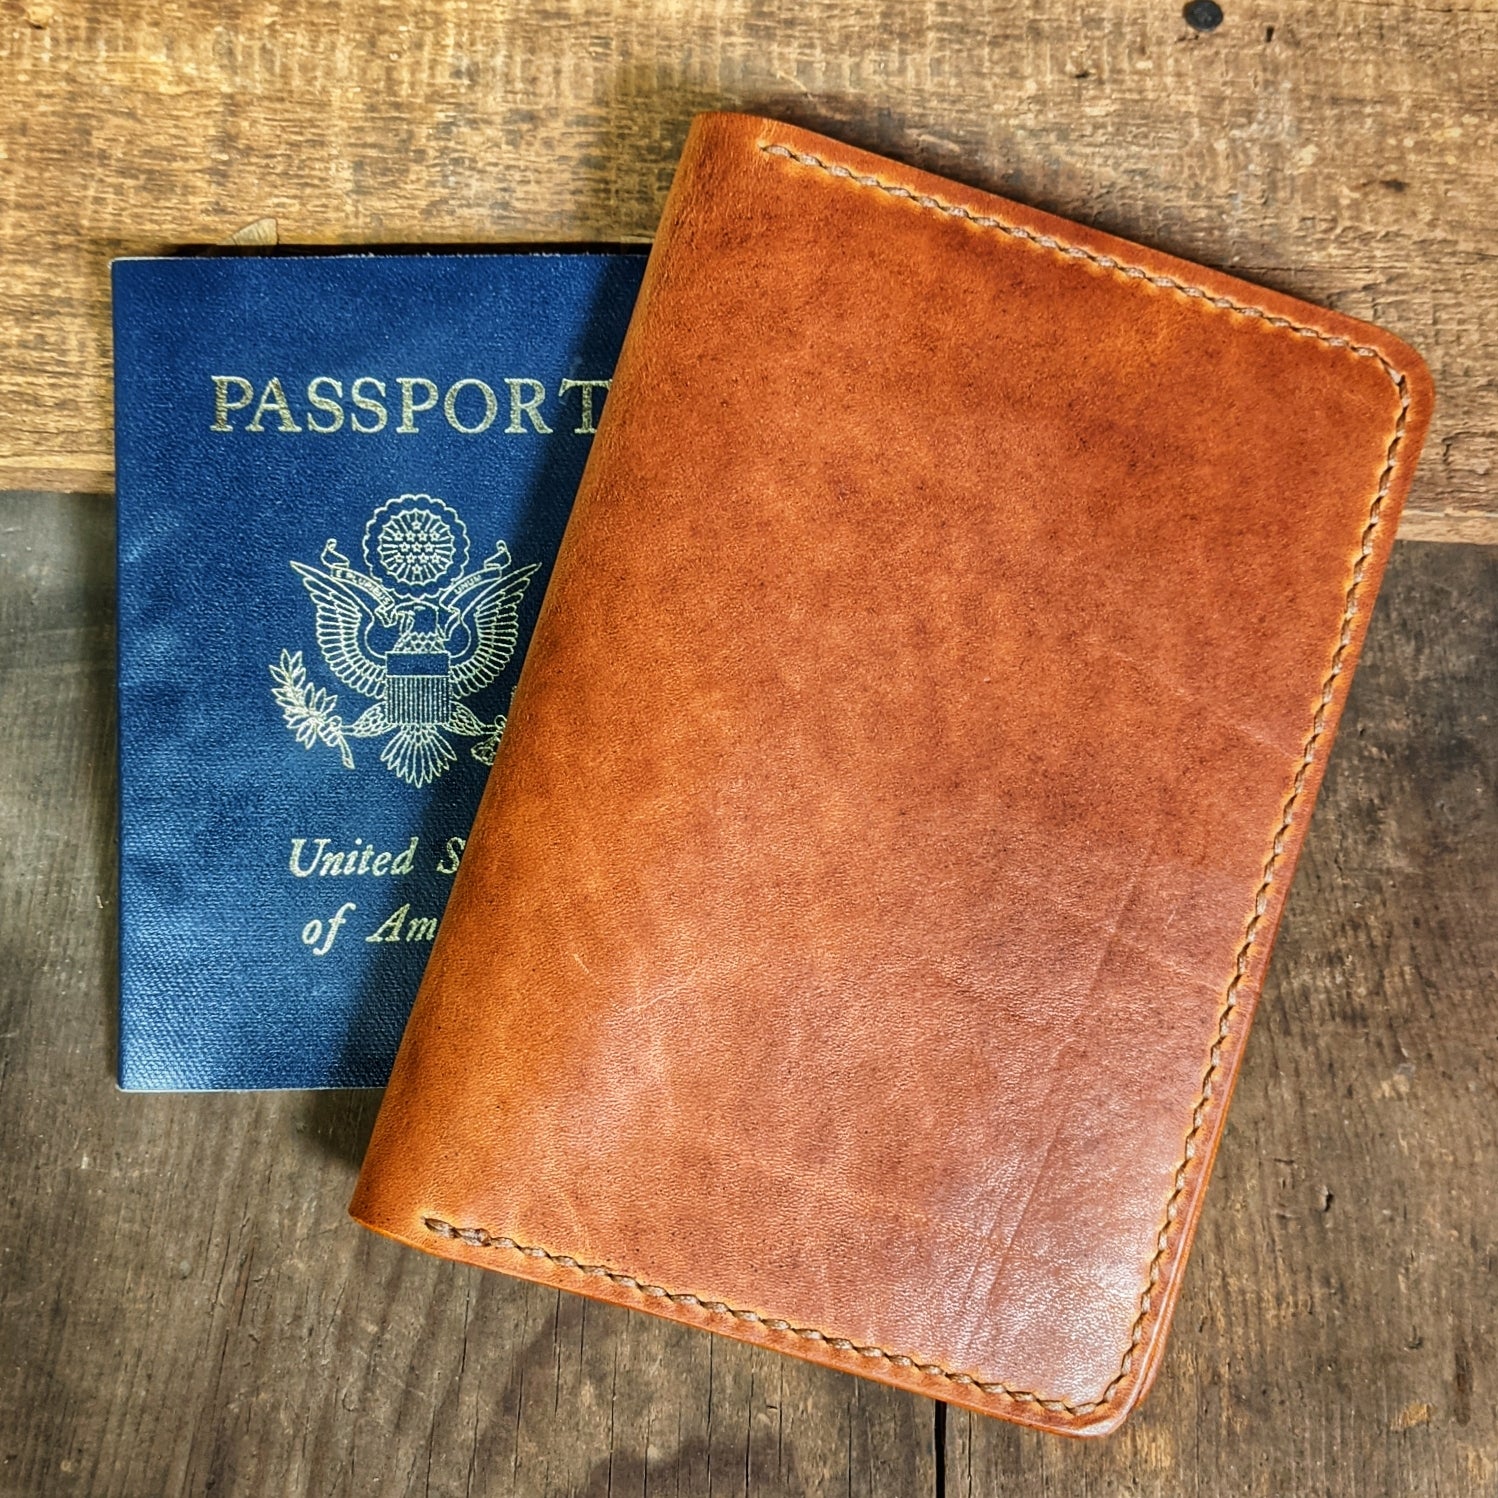 Passport Wallet, Leather Passport Wallet, Passport Holder, Travel